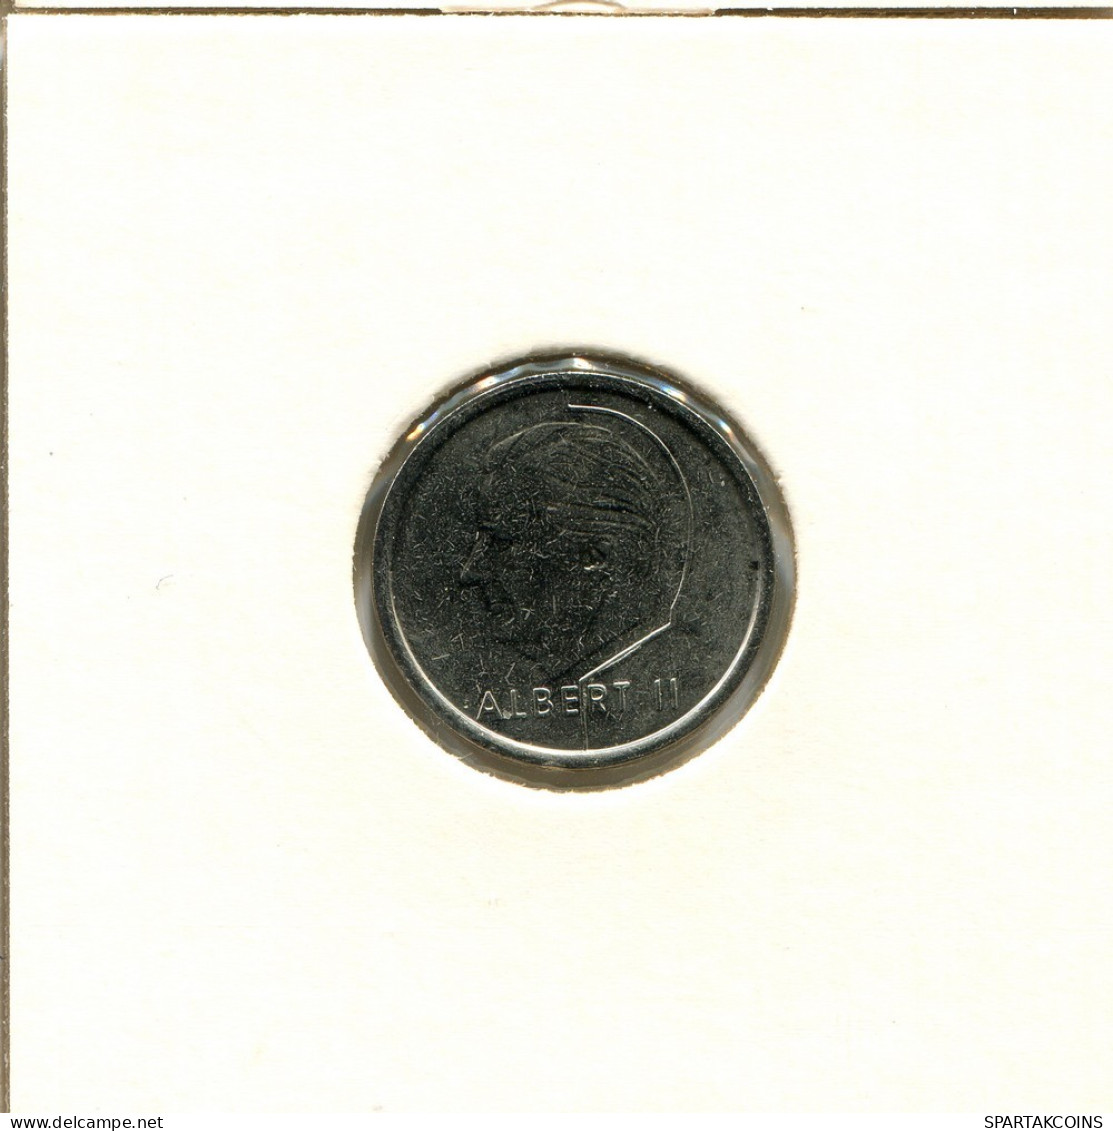 1 FRANC 1997 Französisch Text BELGIEN BELGIUM Münze #AU112.D.A - 1 Frank